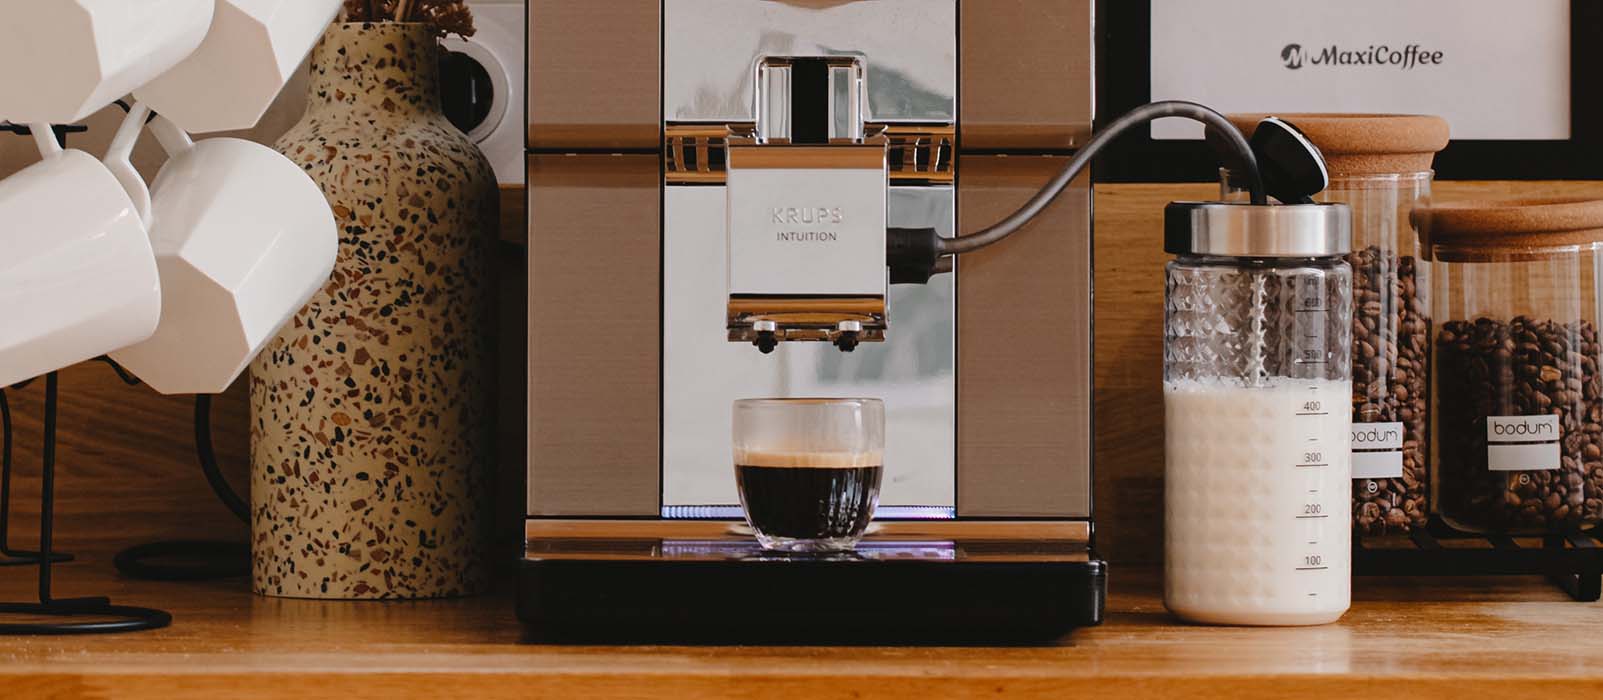 Machine à café : ce marchand éclate le prix de ce modèle phare de la marque  Krups - Le Parisien